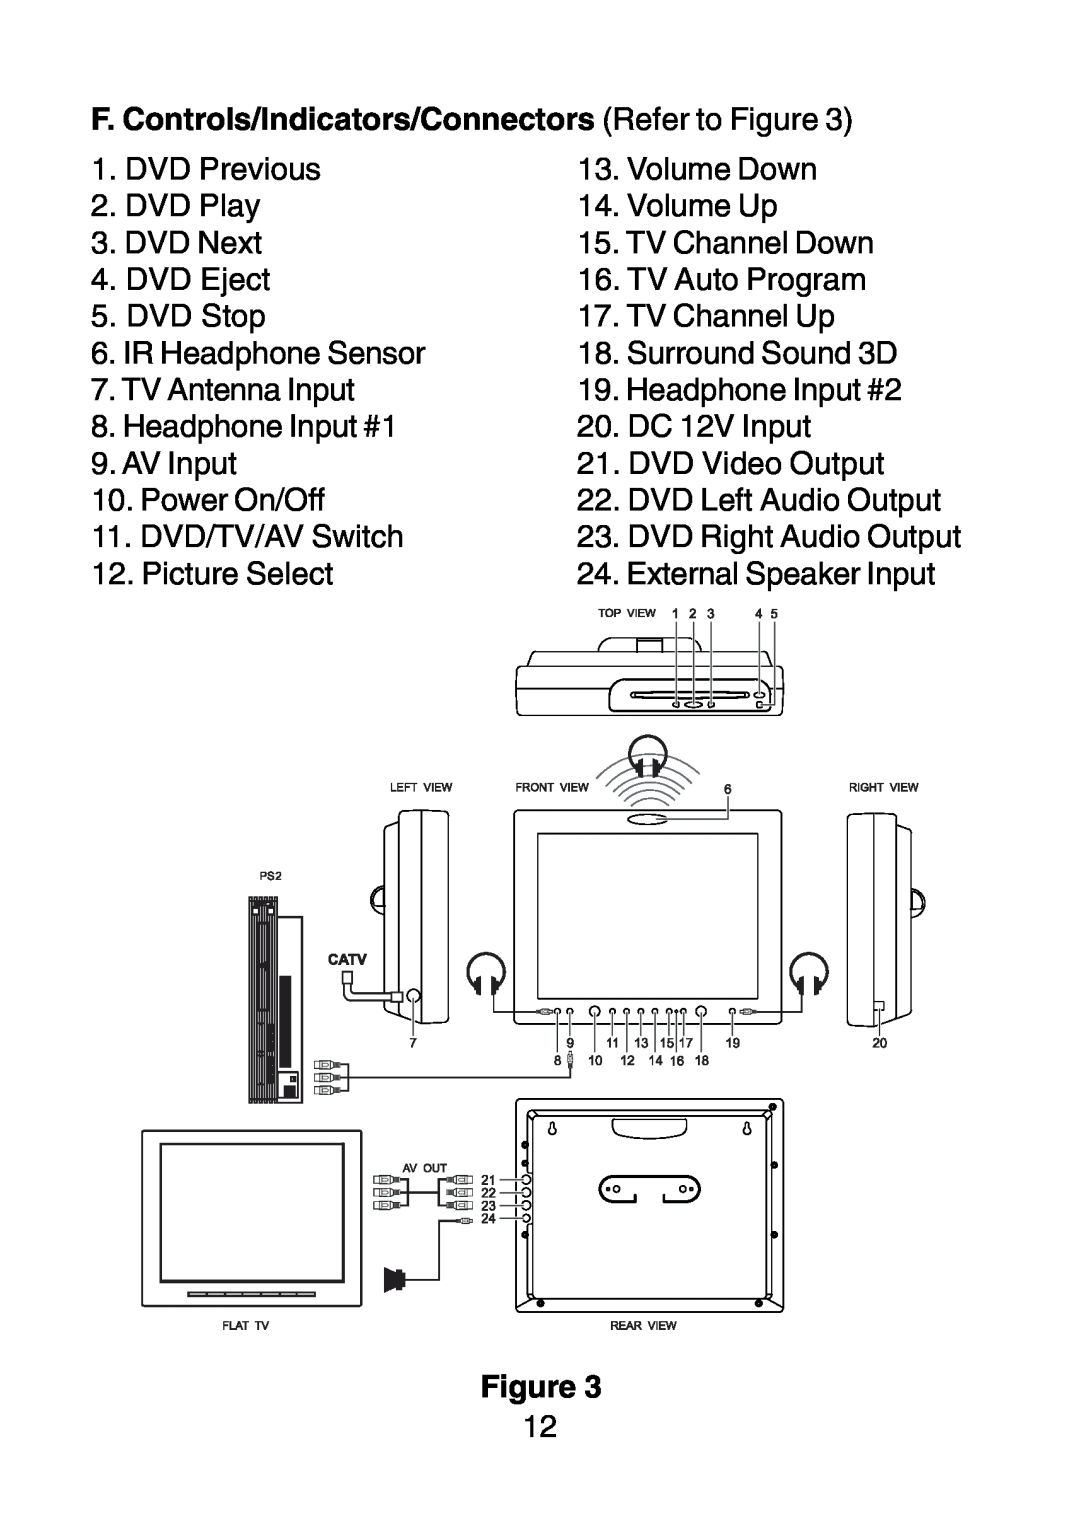 Audiovox D1210 owner manual F. Controls/Indicators/Connectors Refer to Figure 